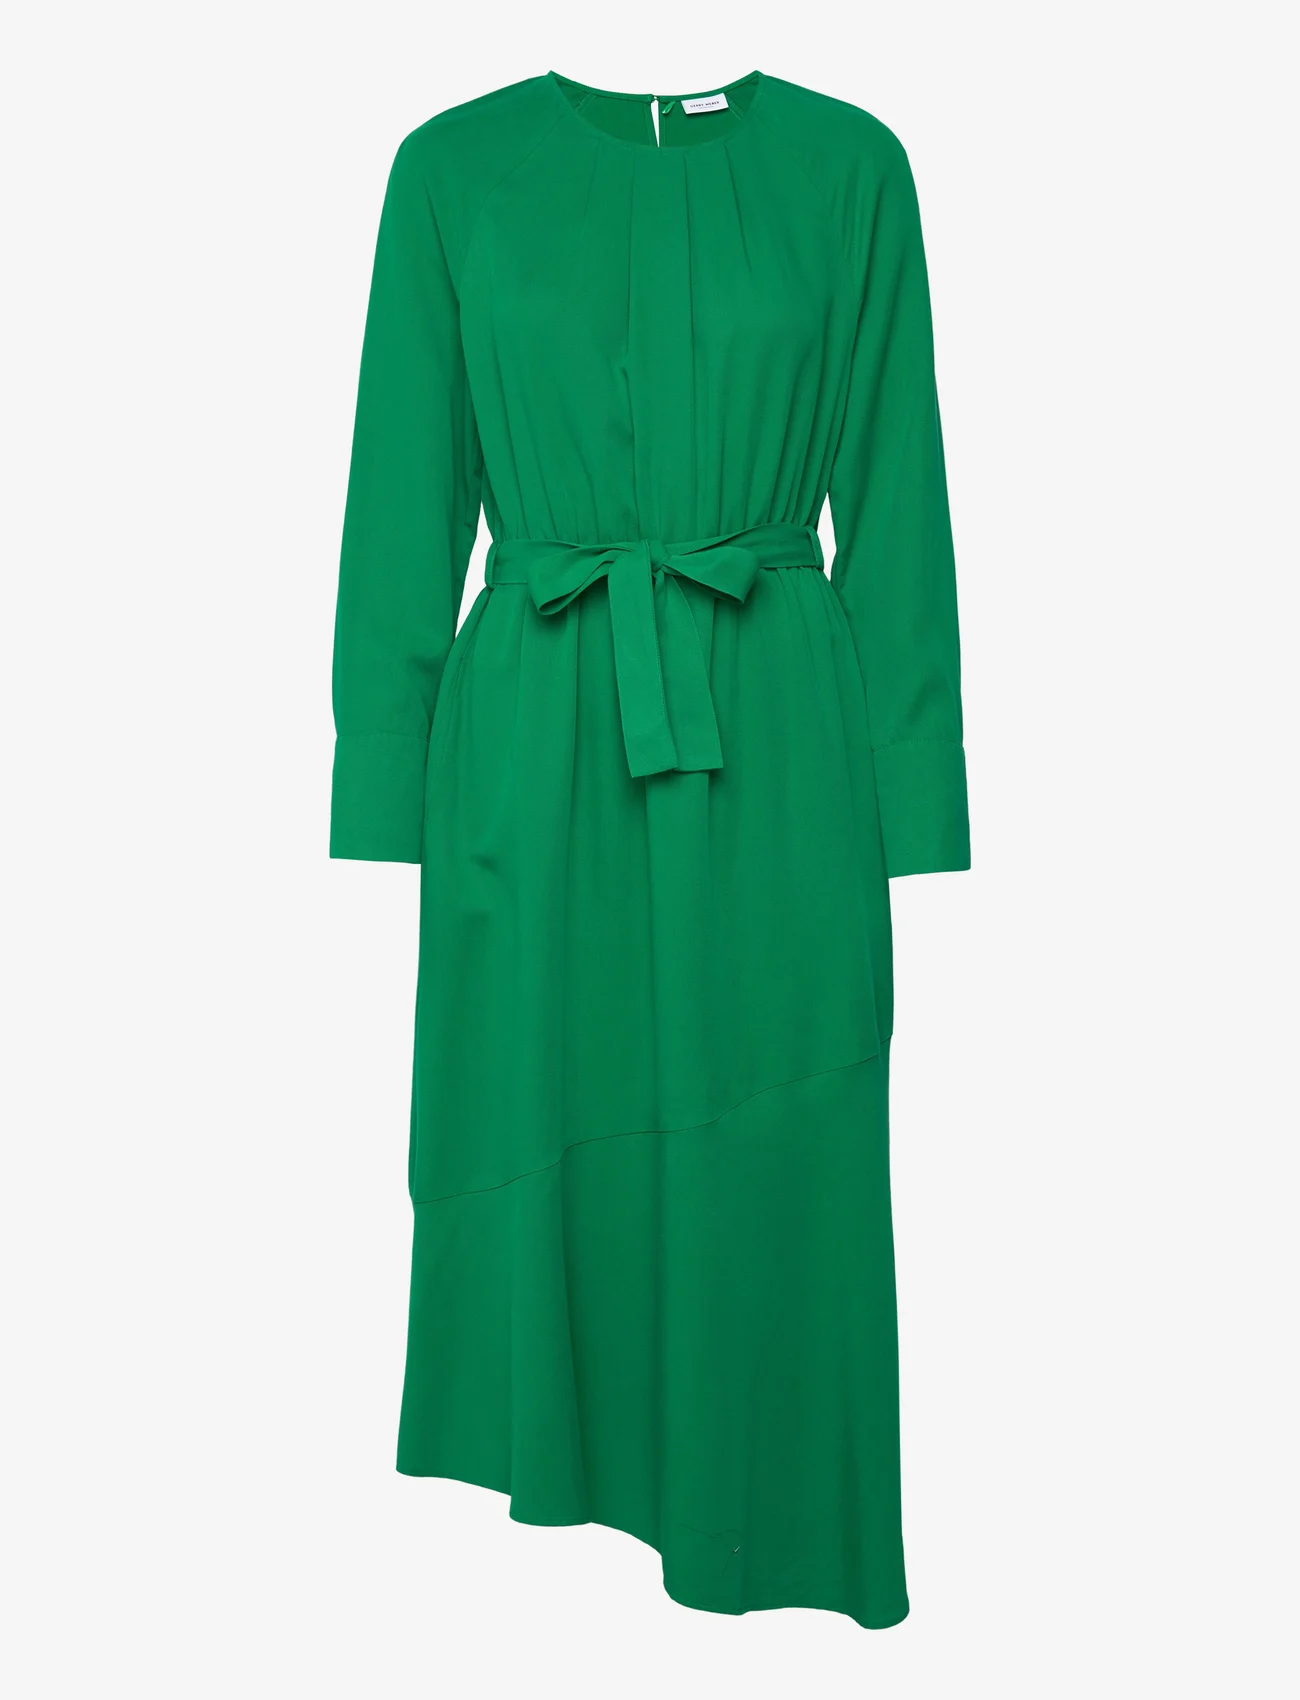 Gerry Weber - DRESS WOVEN - midi kjoler - vibrant green - 0